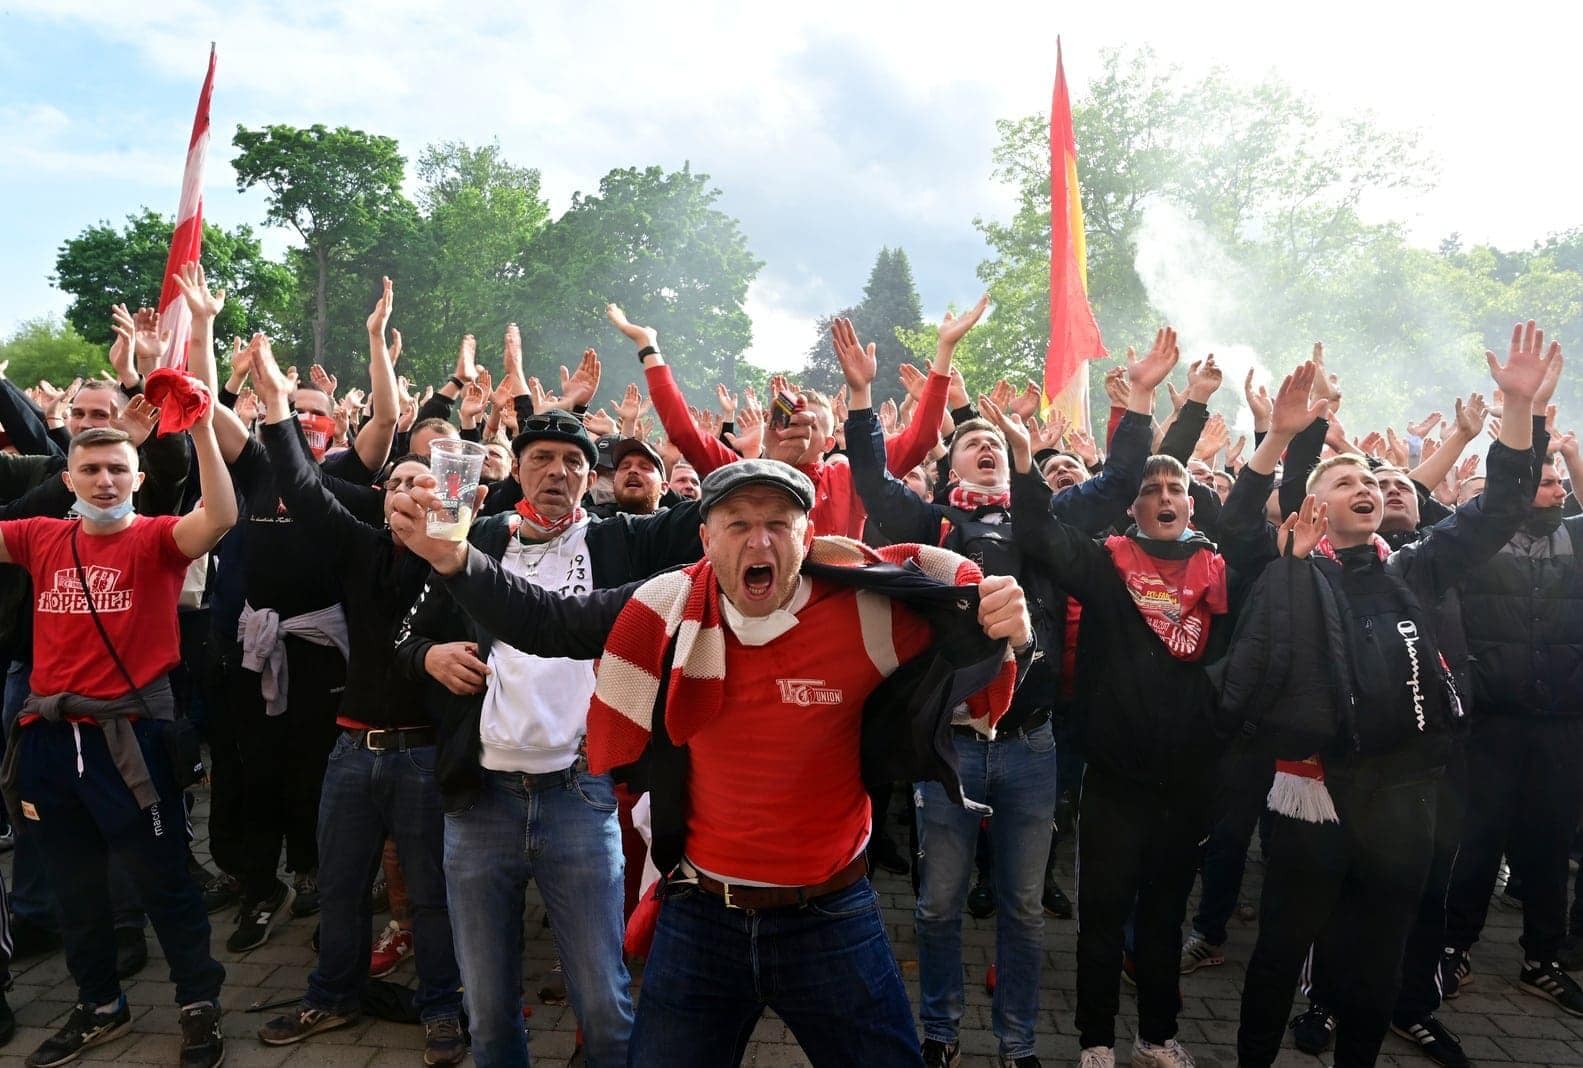 1. FC Union Berlin fans